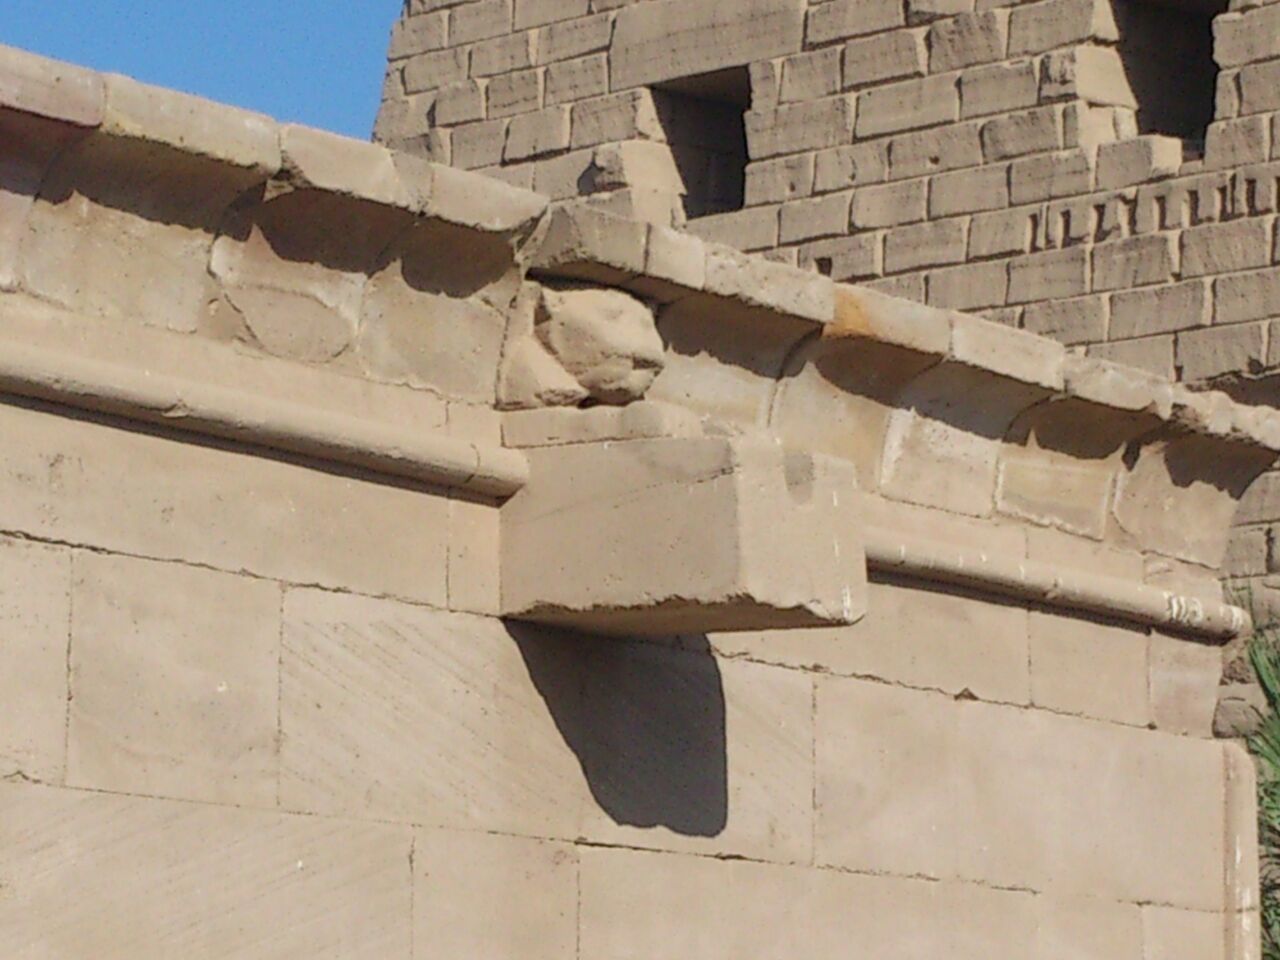 أفكار القدماء المصريين بمعبد الكرنك لمواجهة أخطار "الأمطار والسيول" للحفاظ علي تاريخهم